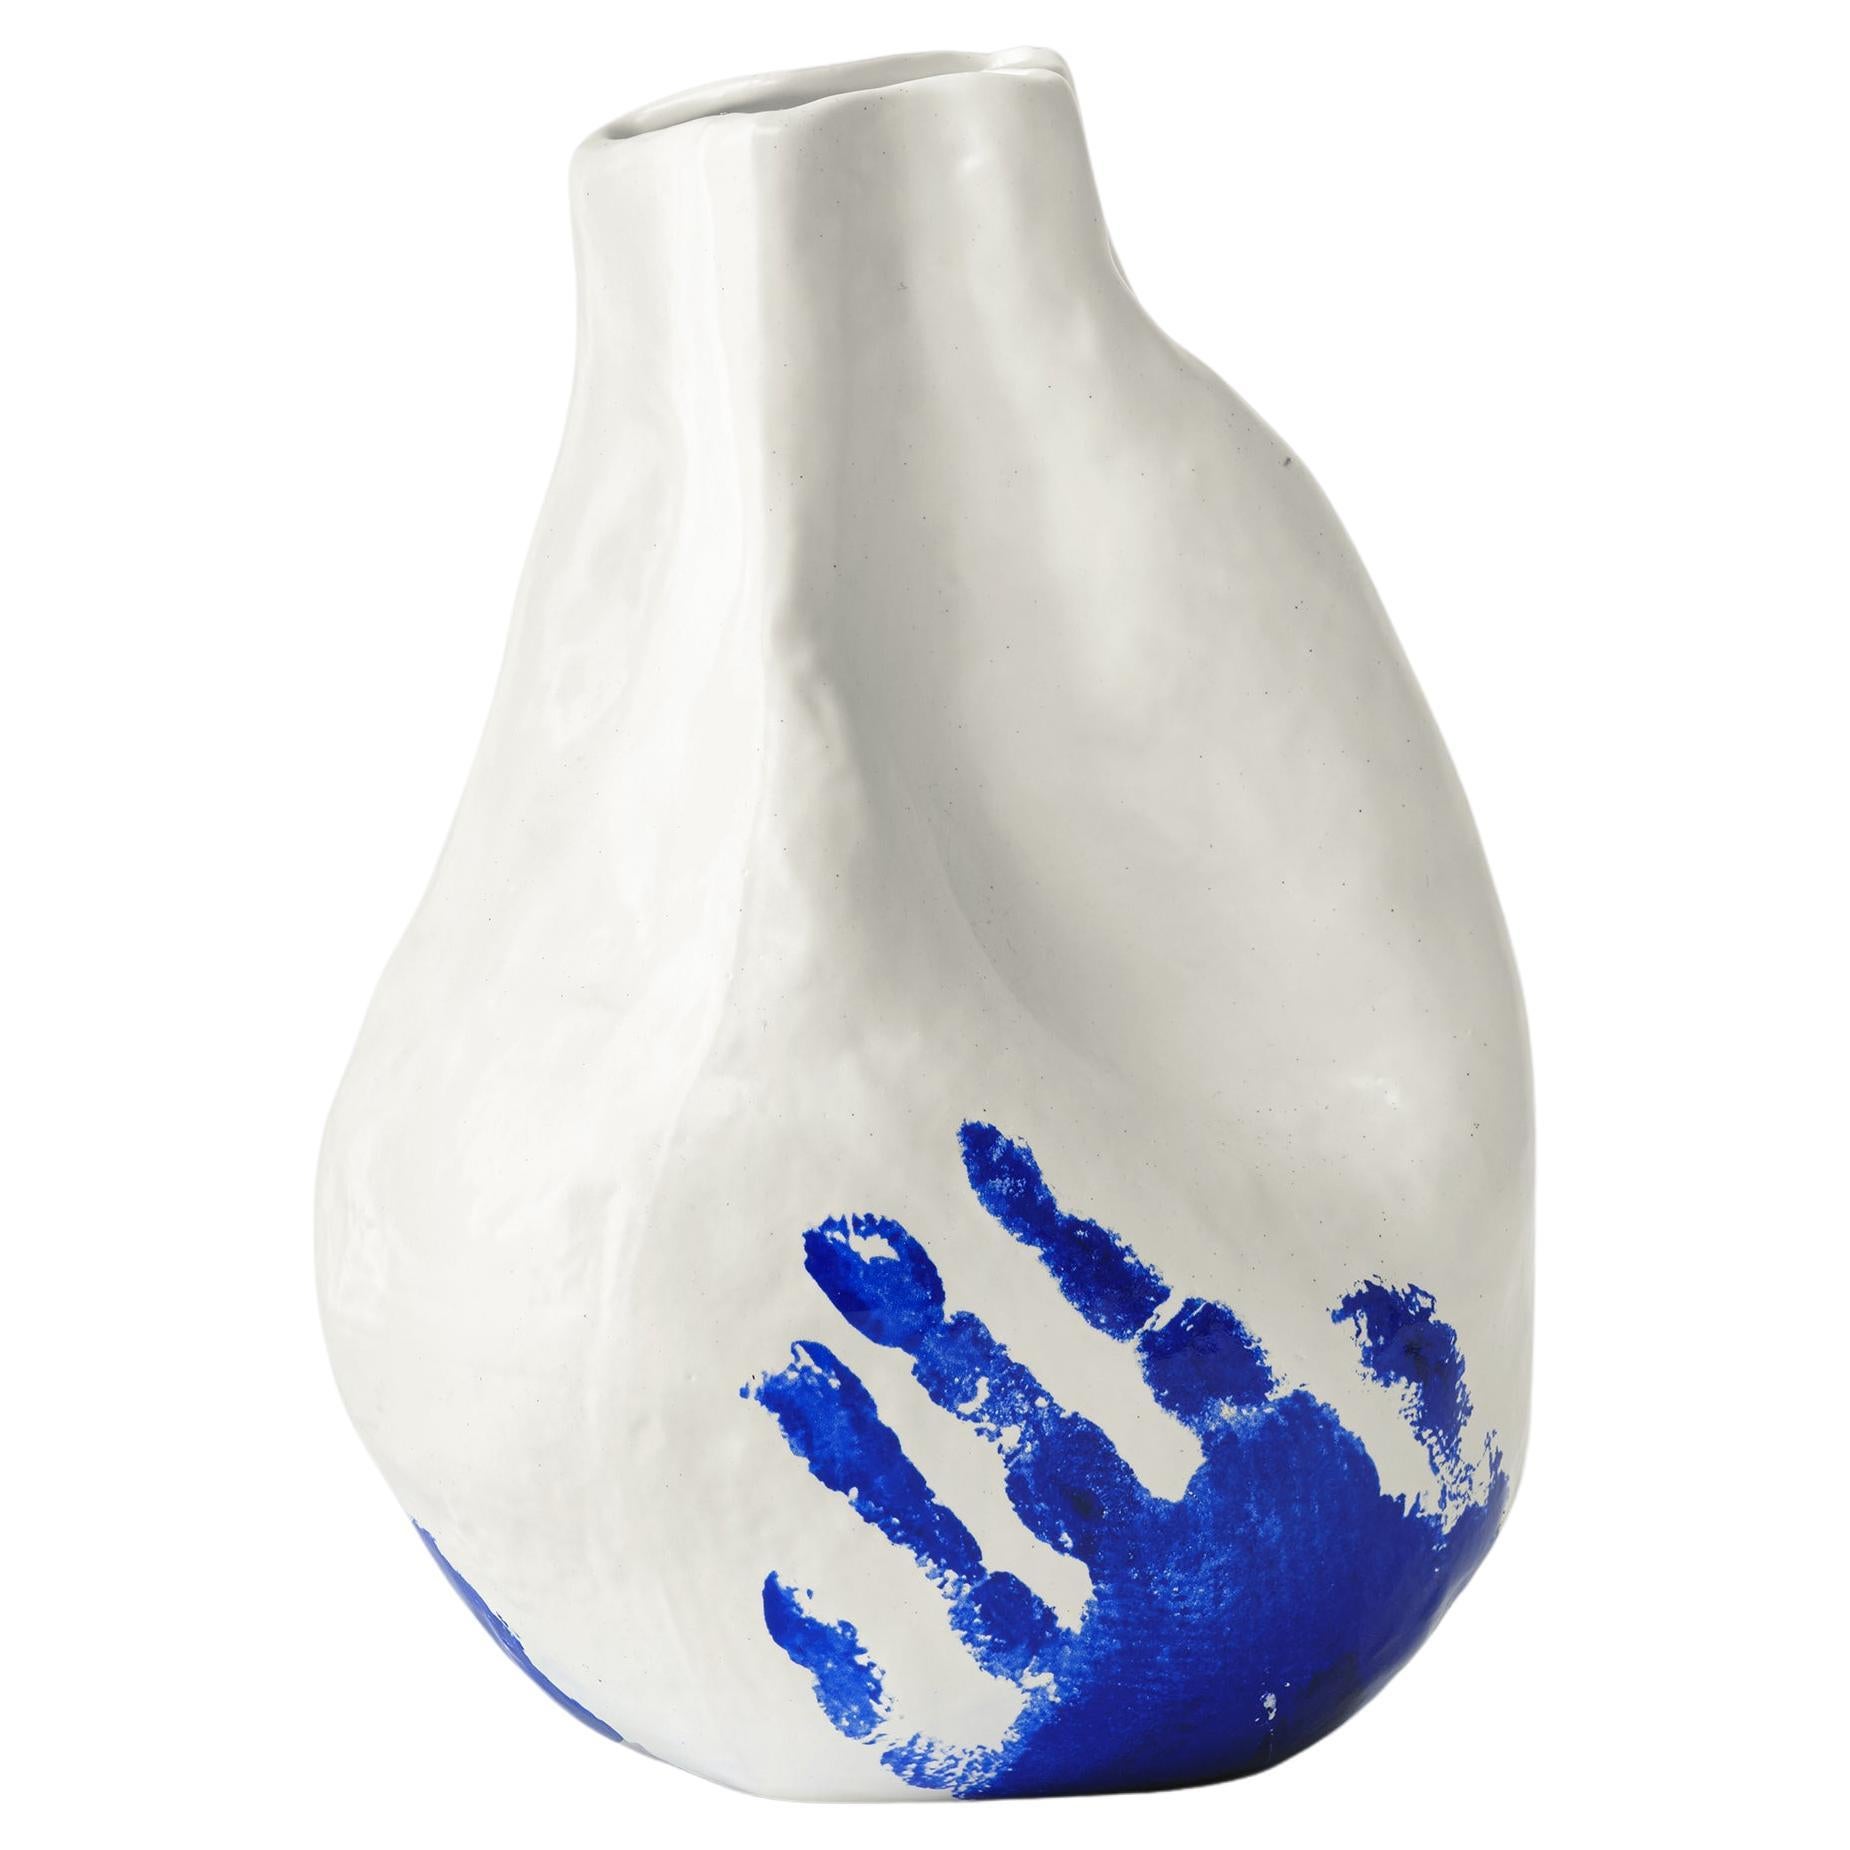 Handgefertigte Alexis-Vase aus Porzellan